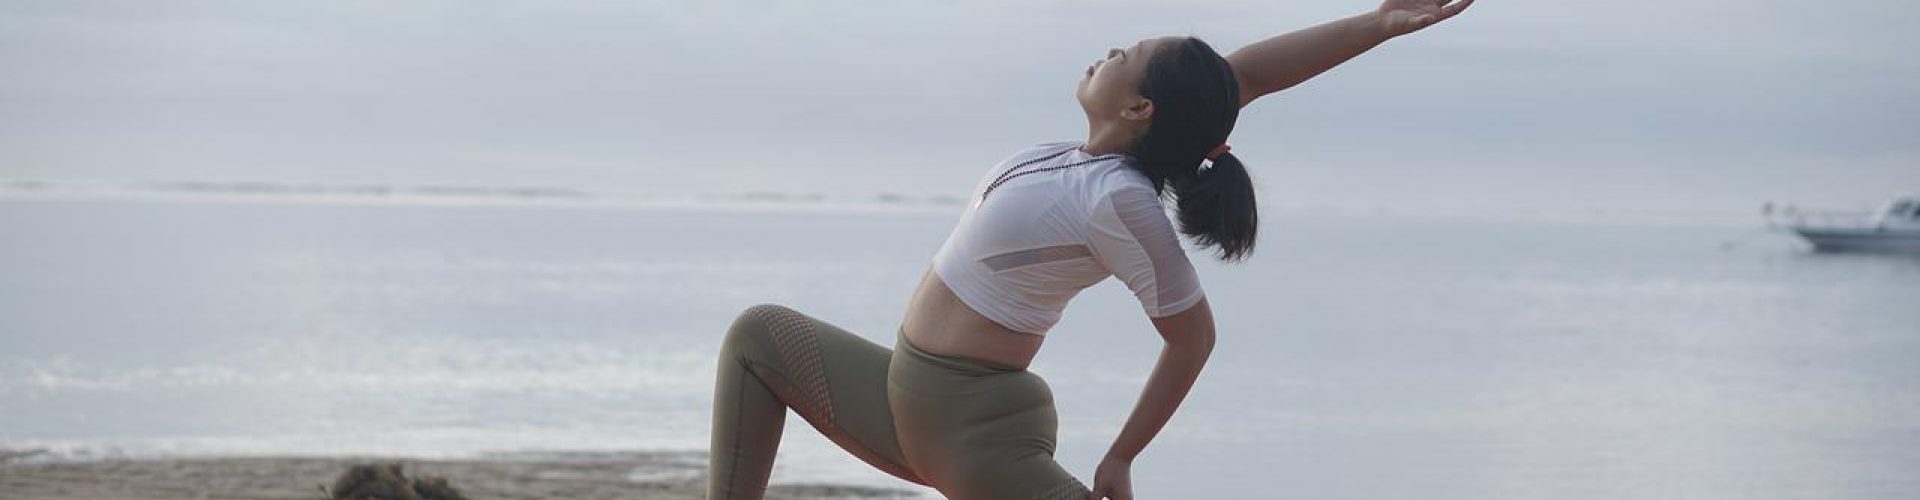 yoga, woman, beach-6849471.jpg